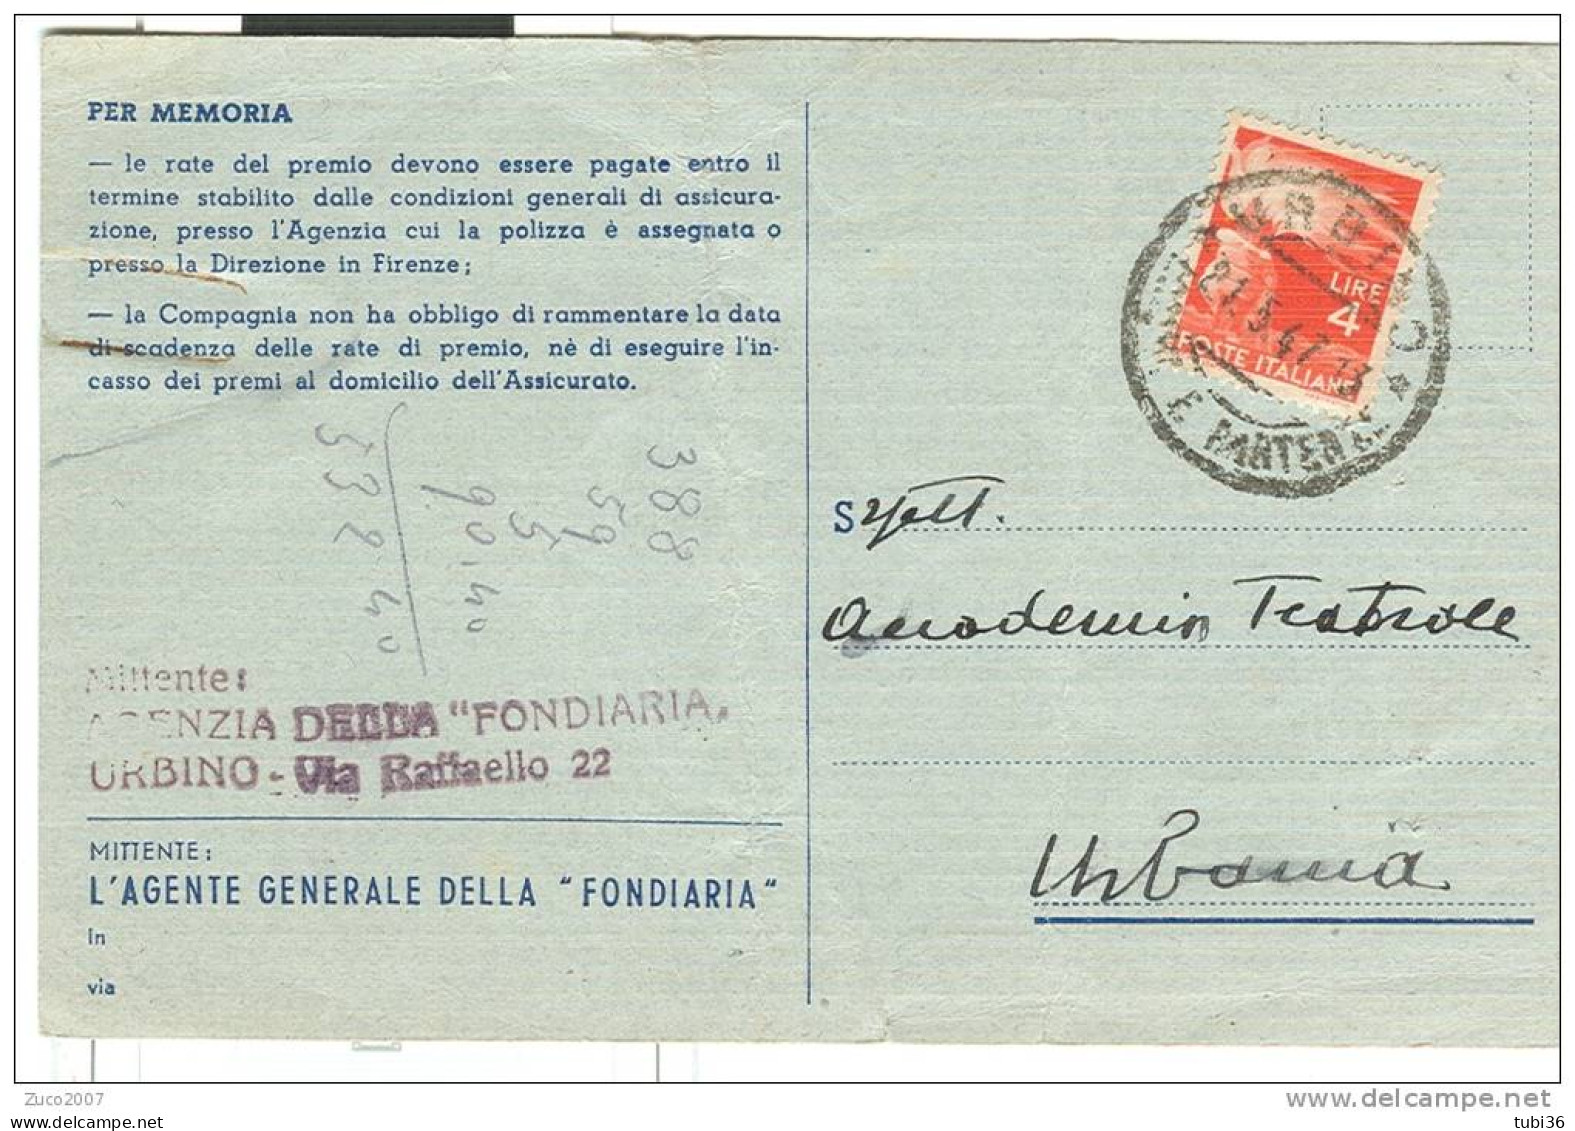 LA FONDIARIA, ASSICURAZIONI, URBINO,  CARTOLINA COMMERCIALE  SCADENZA PREMIO, VIAGGIATA  1947, PER URBANIA, - Urbino